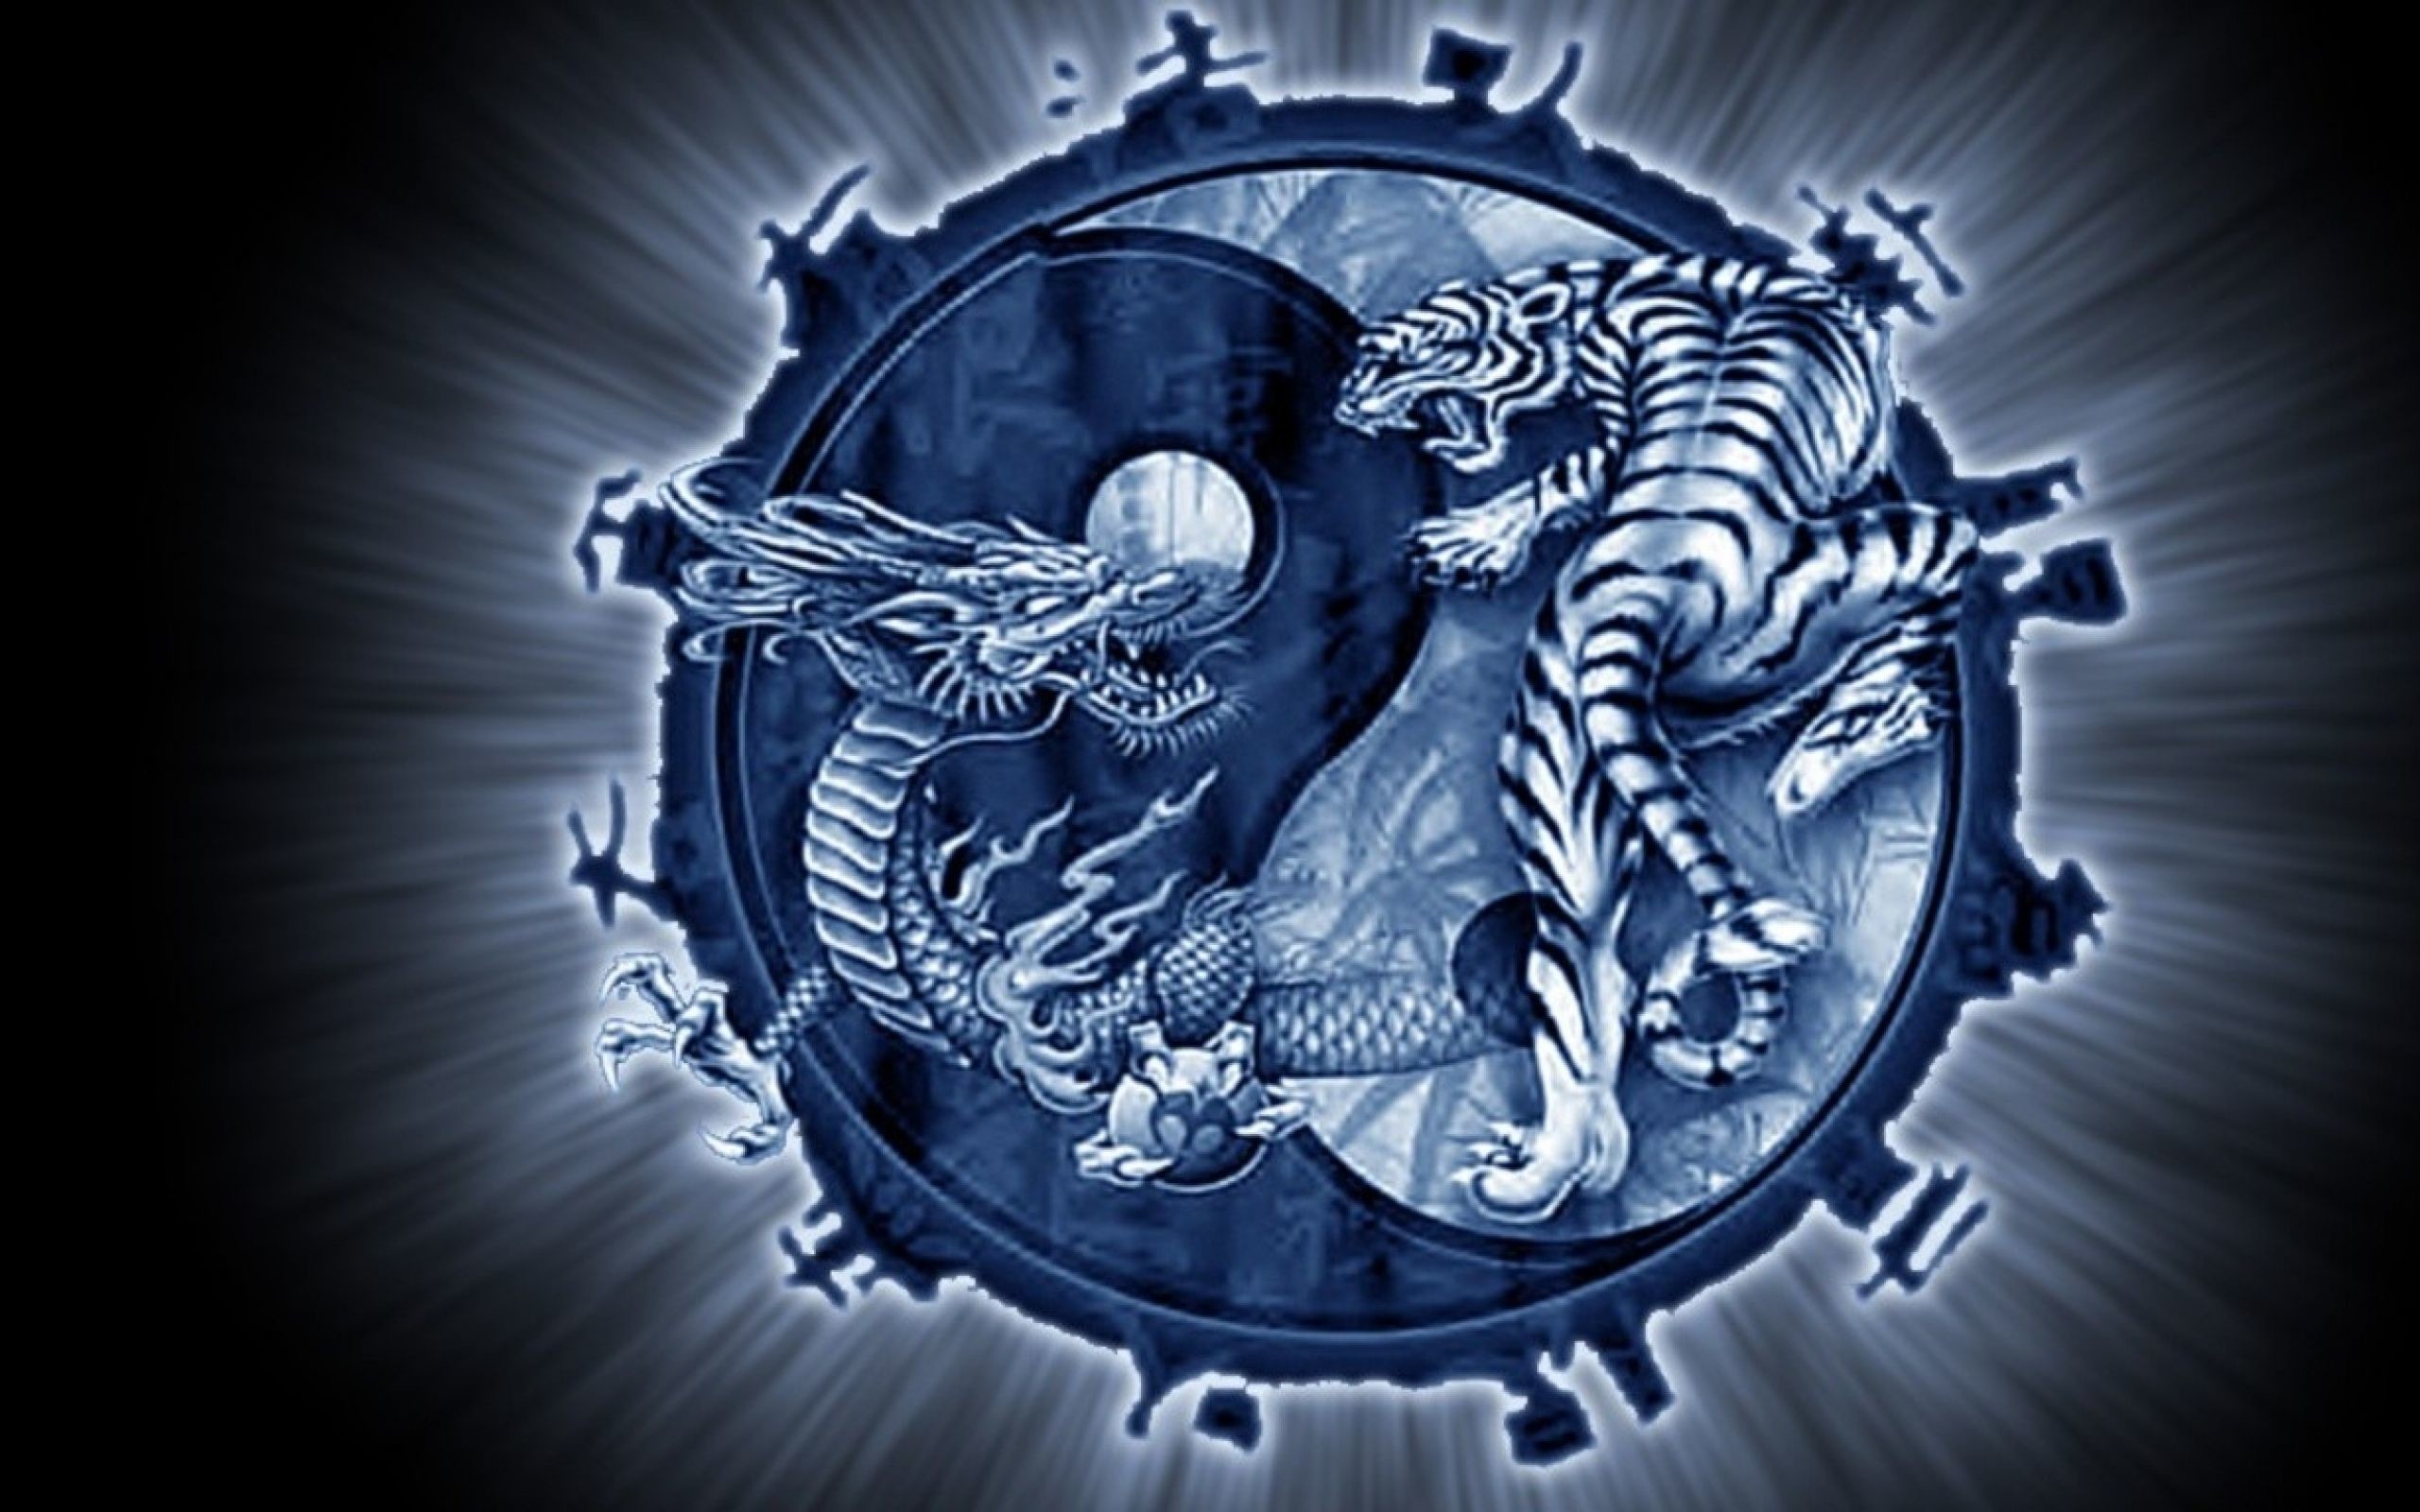 2560x1600, Fantasy Yin Yang - Yin Yang Dragon Wallpaper Hd - 2560x1600  Wallpaper 